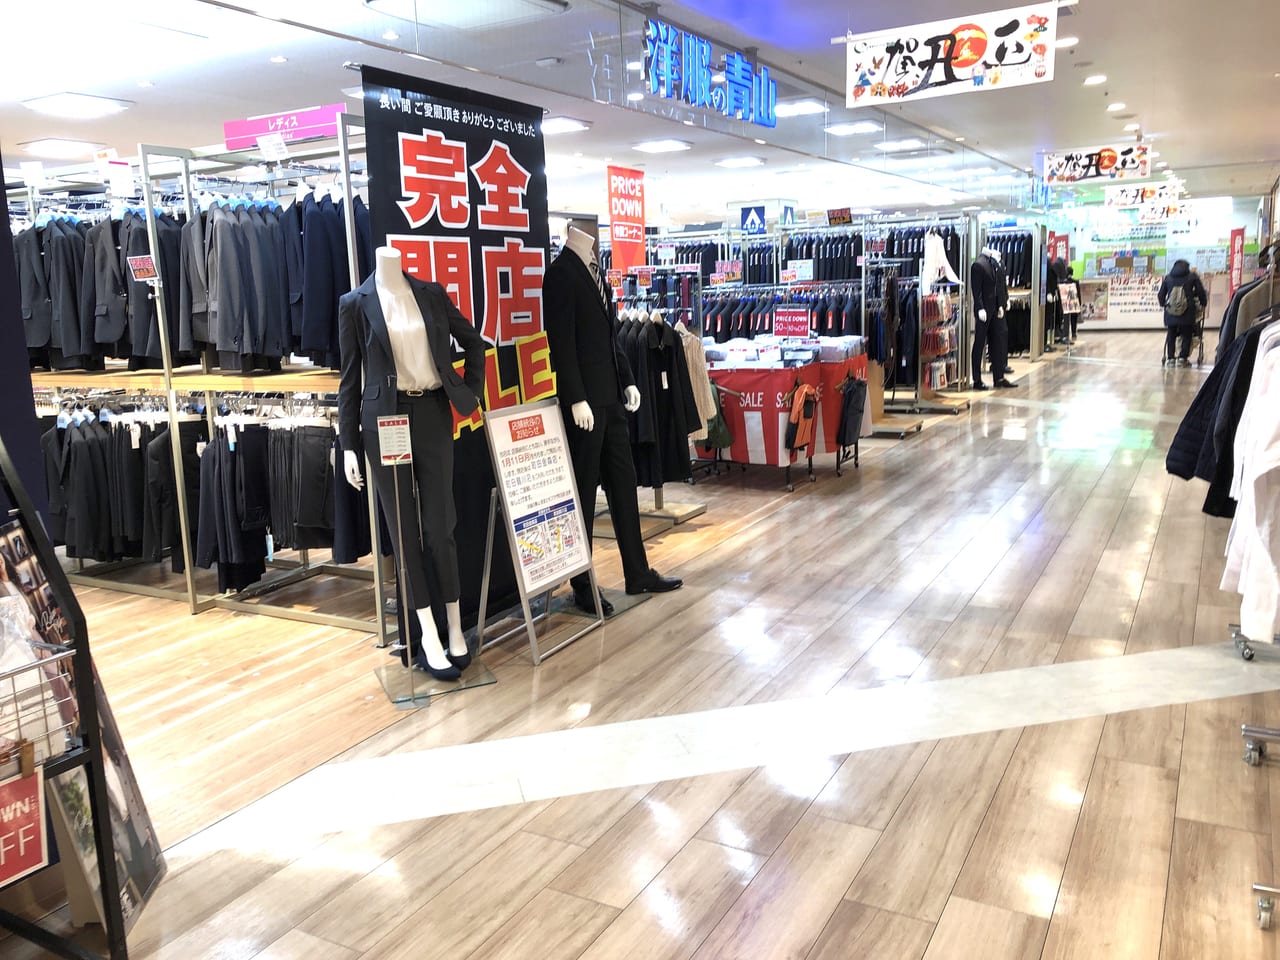 【町田市】ままともプラザの「洋服の青山」が1月11日で閉店になります。最大7割引きでスーツが買える閉店セールは今週末がラストチャンス